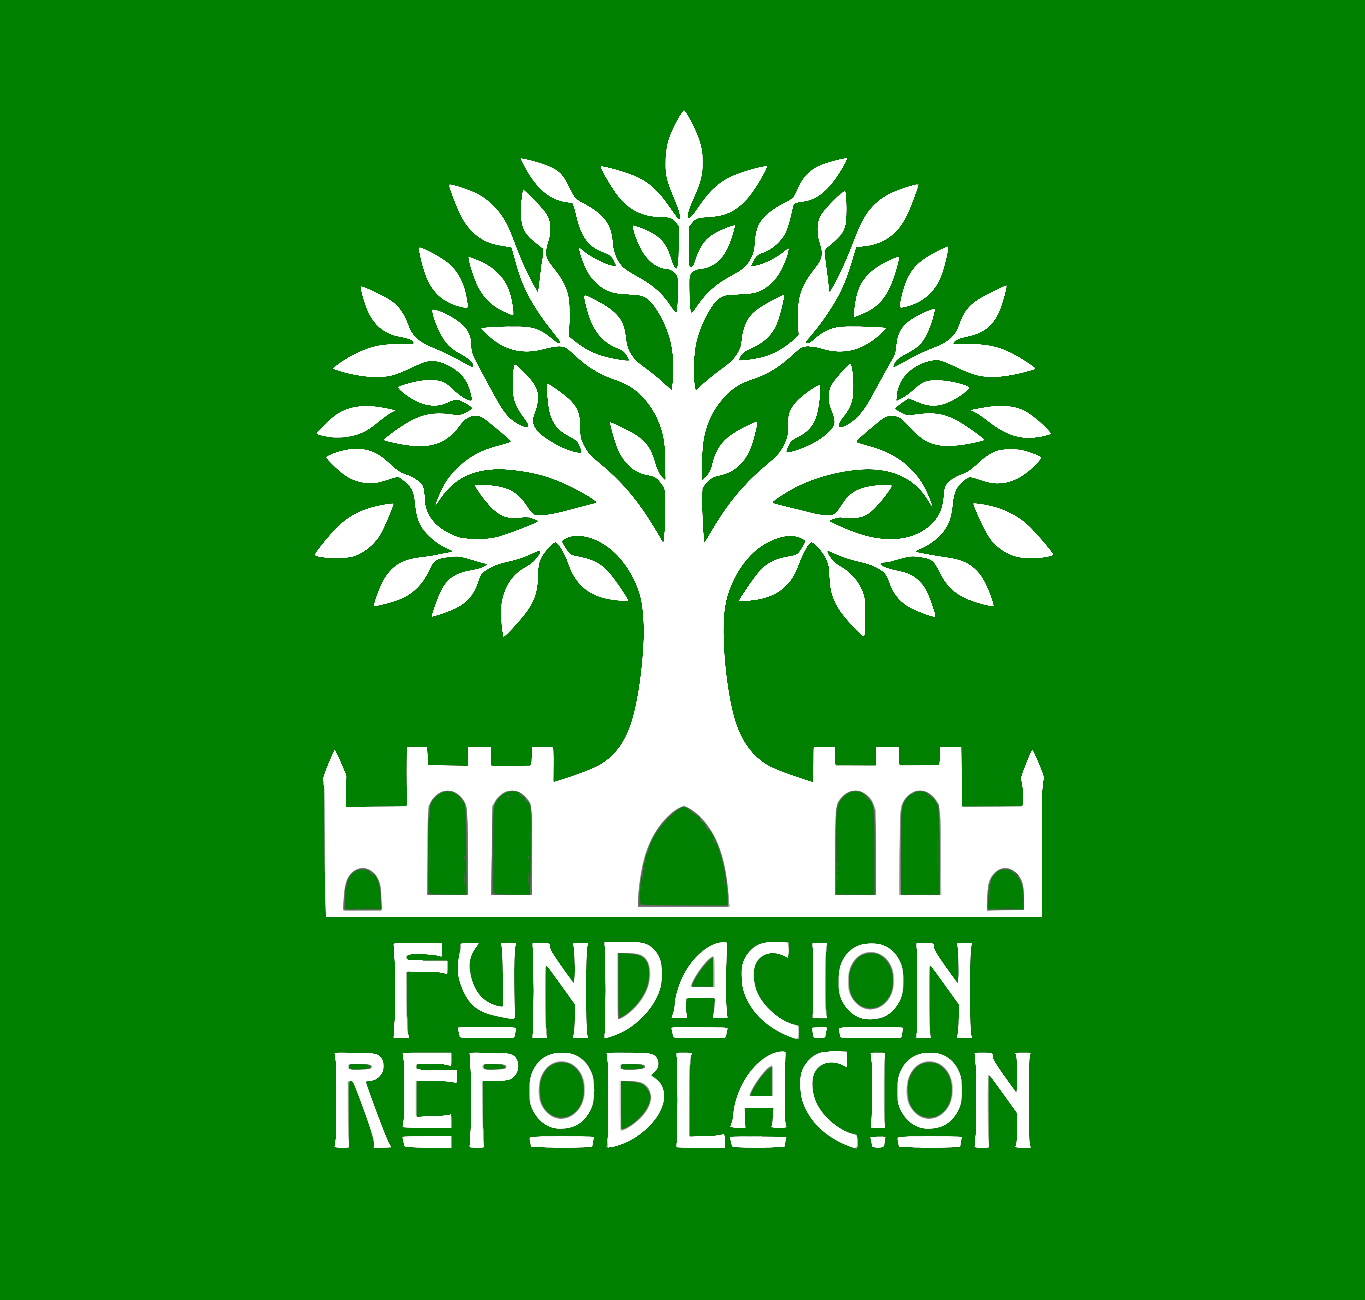 Fundación Repoblación